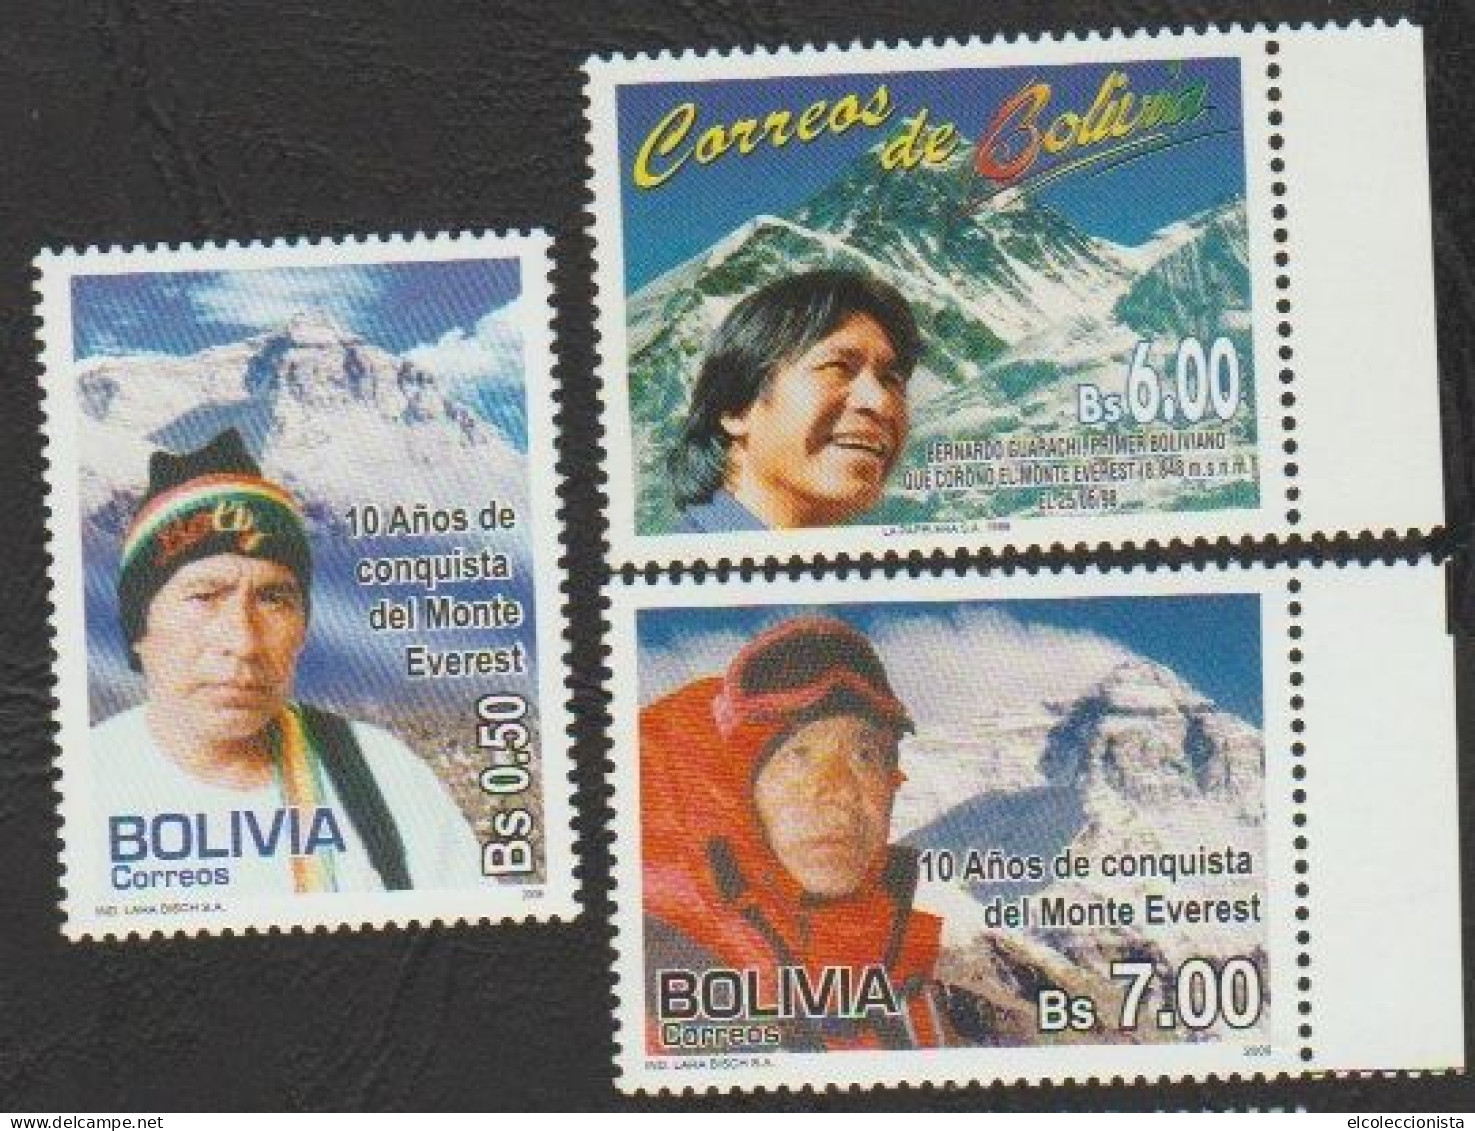 1999-2009 Bolivia Bernardo Guarachi Climber Mt. Everest MNH Scott 1056 1405 1406 - Bolivien